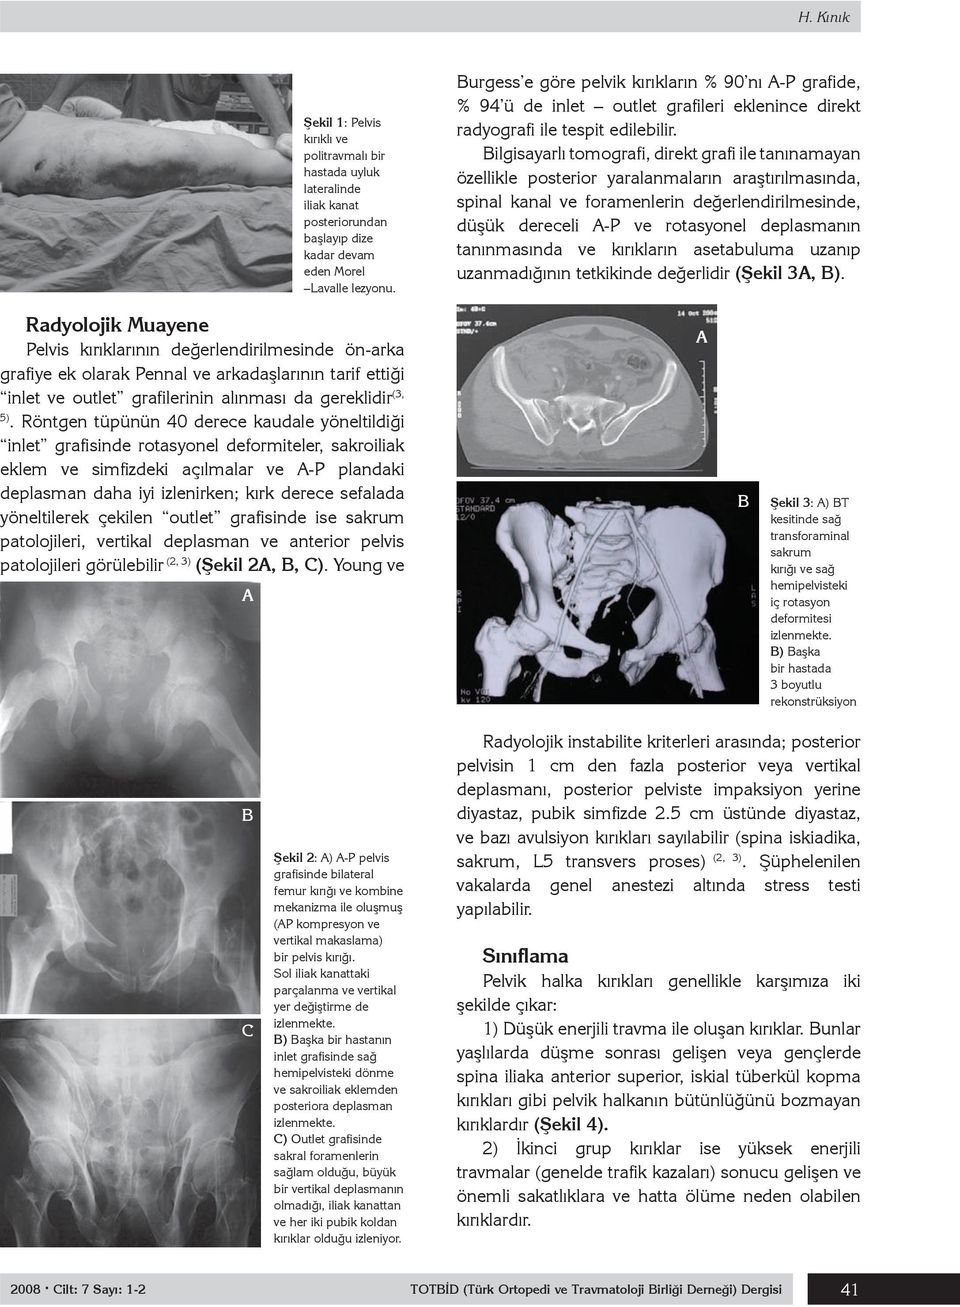 Bilgisayarlı tomografi, direkt grafi ile tanınamayan özellikle posterior yaralanmaların araştırılmasında, spinal kanal ve foramenlerin değerlendirilmesinde, düşük dereceli A-P ve rotasyonel